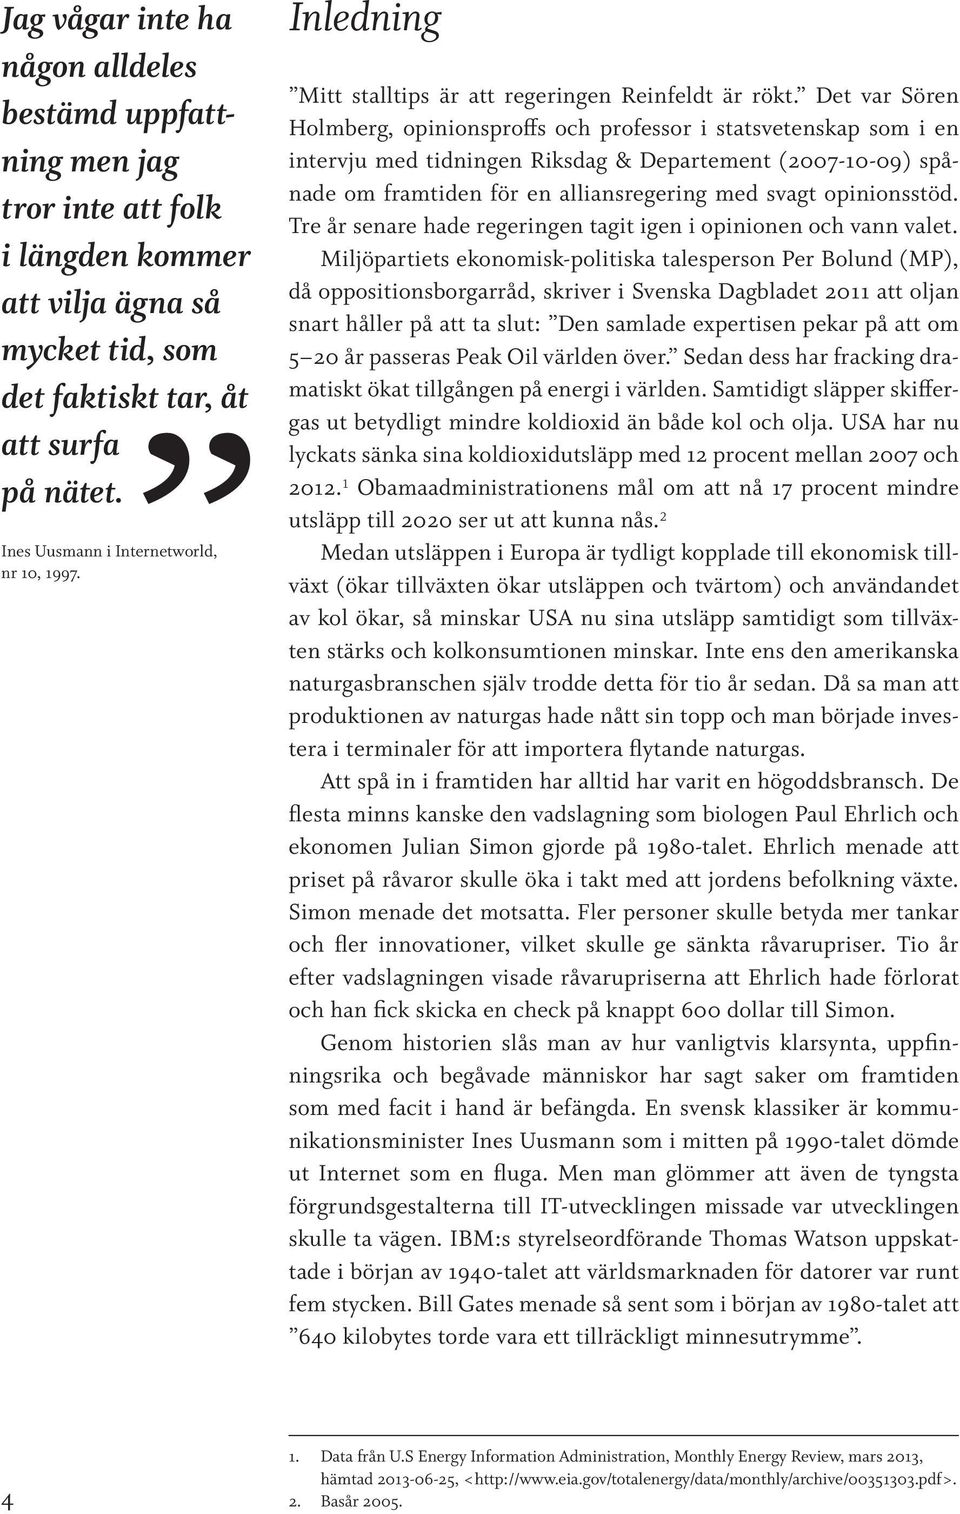 Det var Sören Holmberg, opinionsproffs och professor i statsvetenskap som i en intervju med tidningen Riksdag & Departement (2007-10-09) spånade om framtiden för en alliansregering med svagt